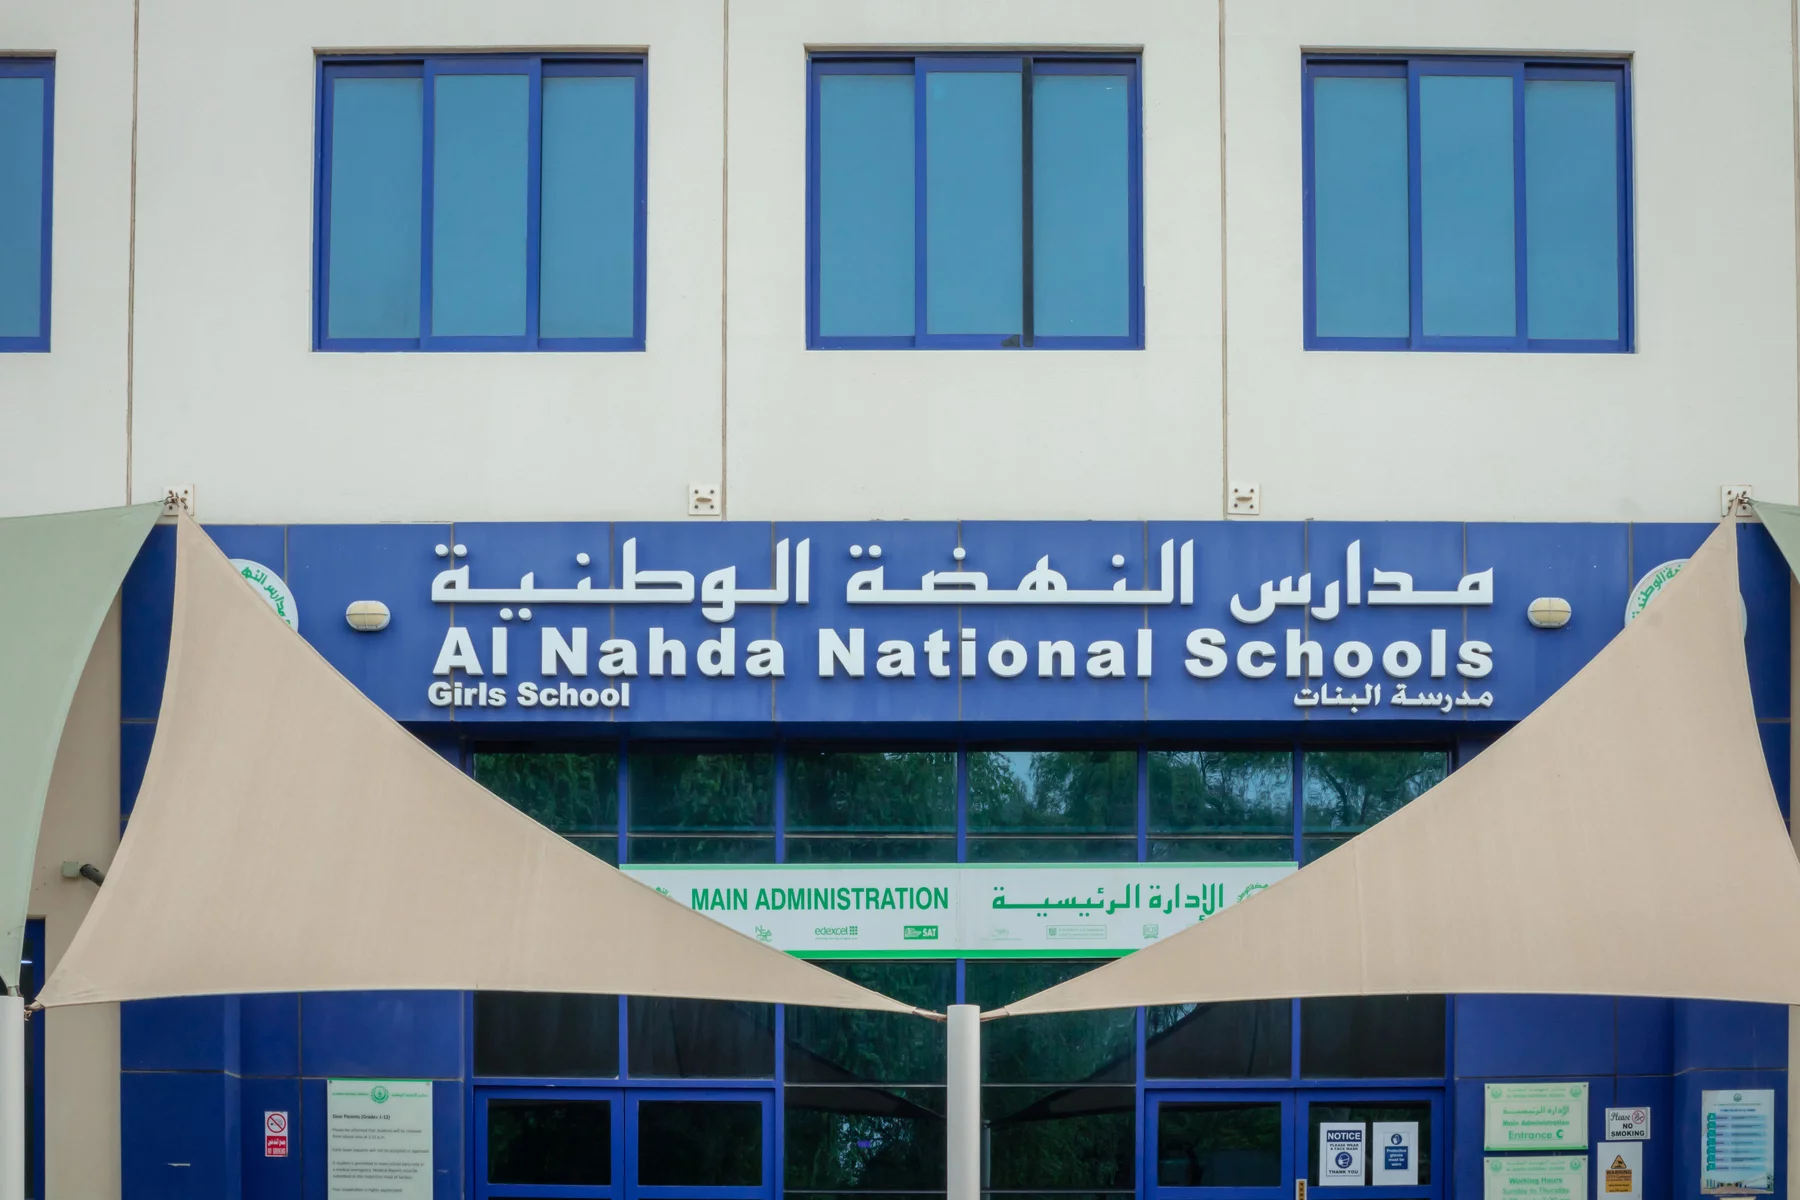 Al Nahda Girls School in Abu Dhabi